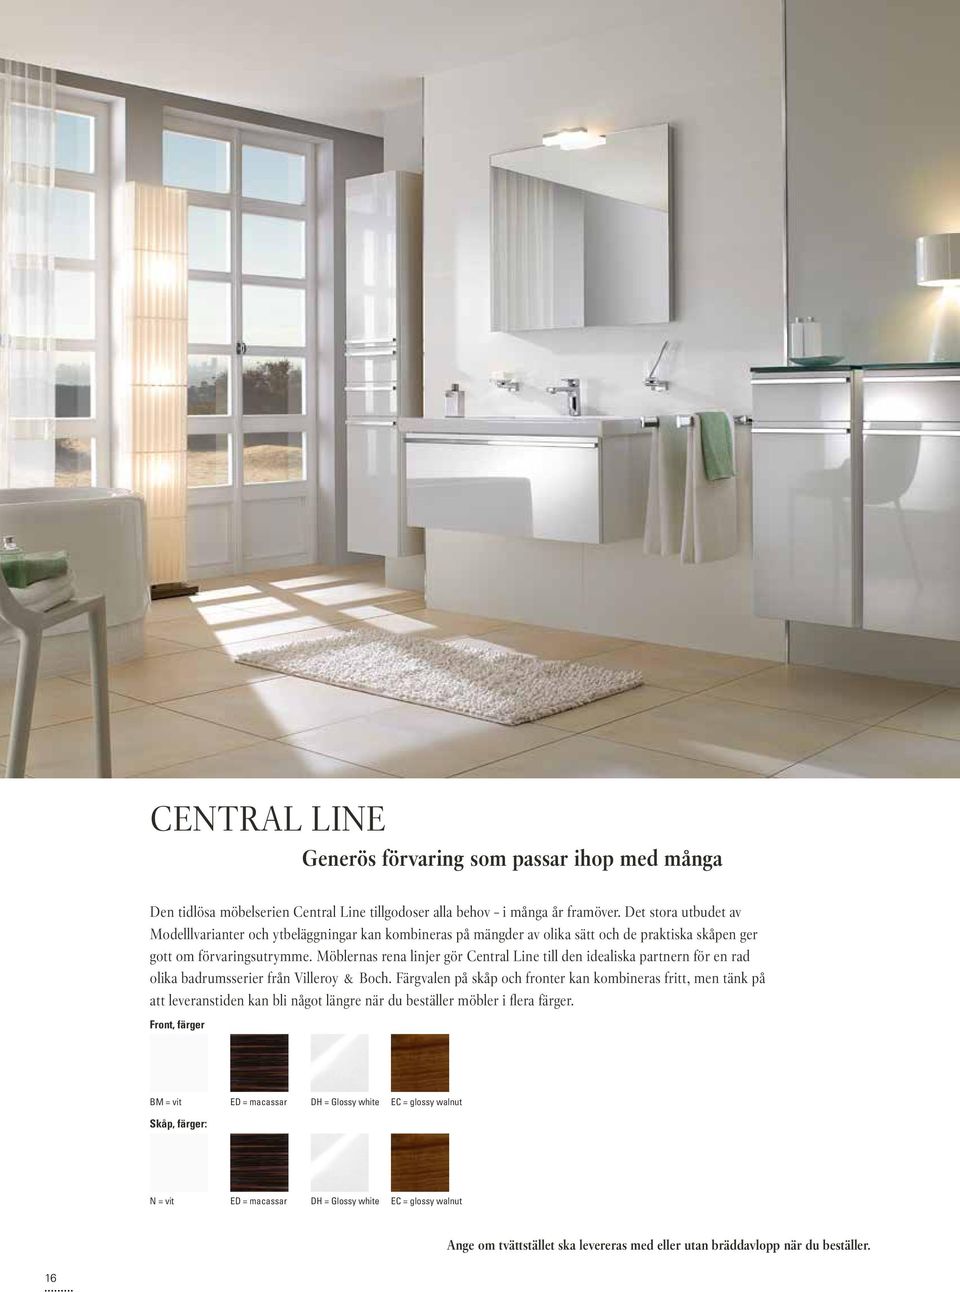 Möblernas rena linjer gör Central Line till den idealiska partnern för en rad olika badrumsserier från Villeroy & Boch.